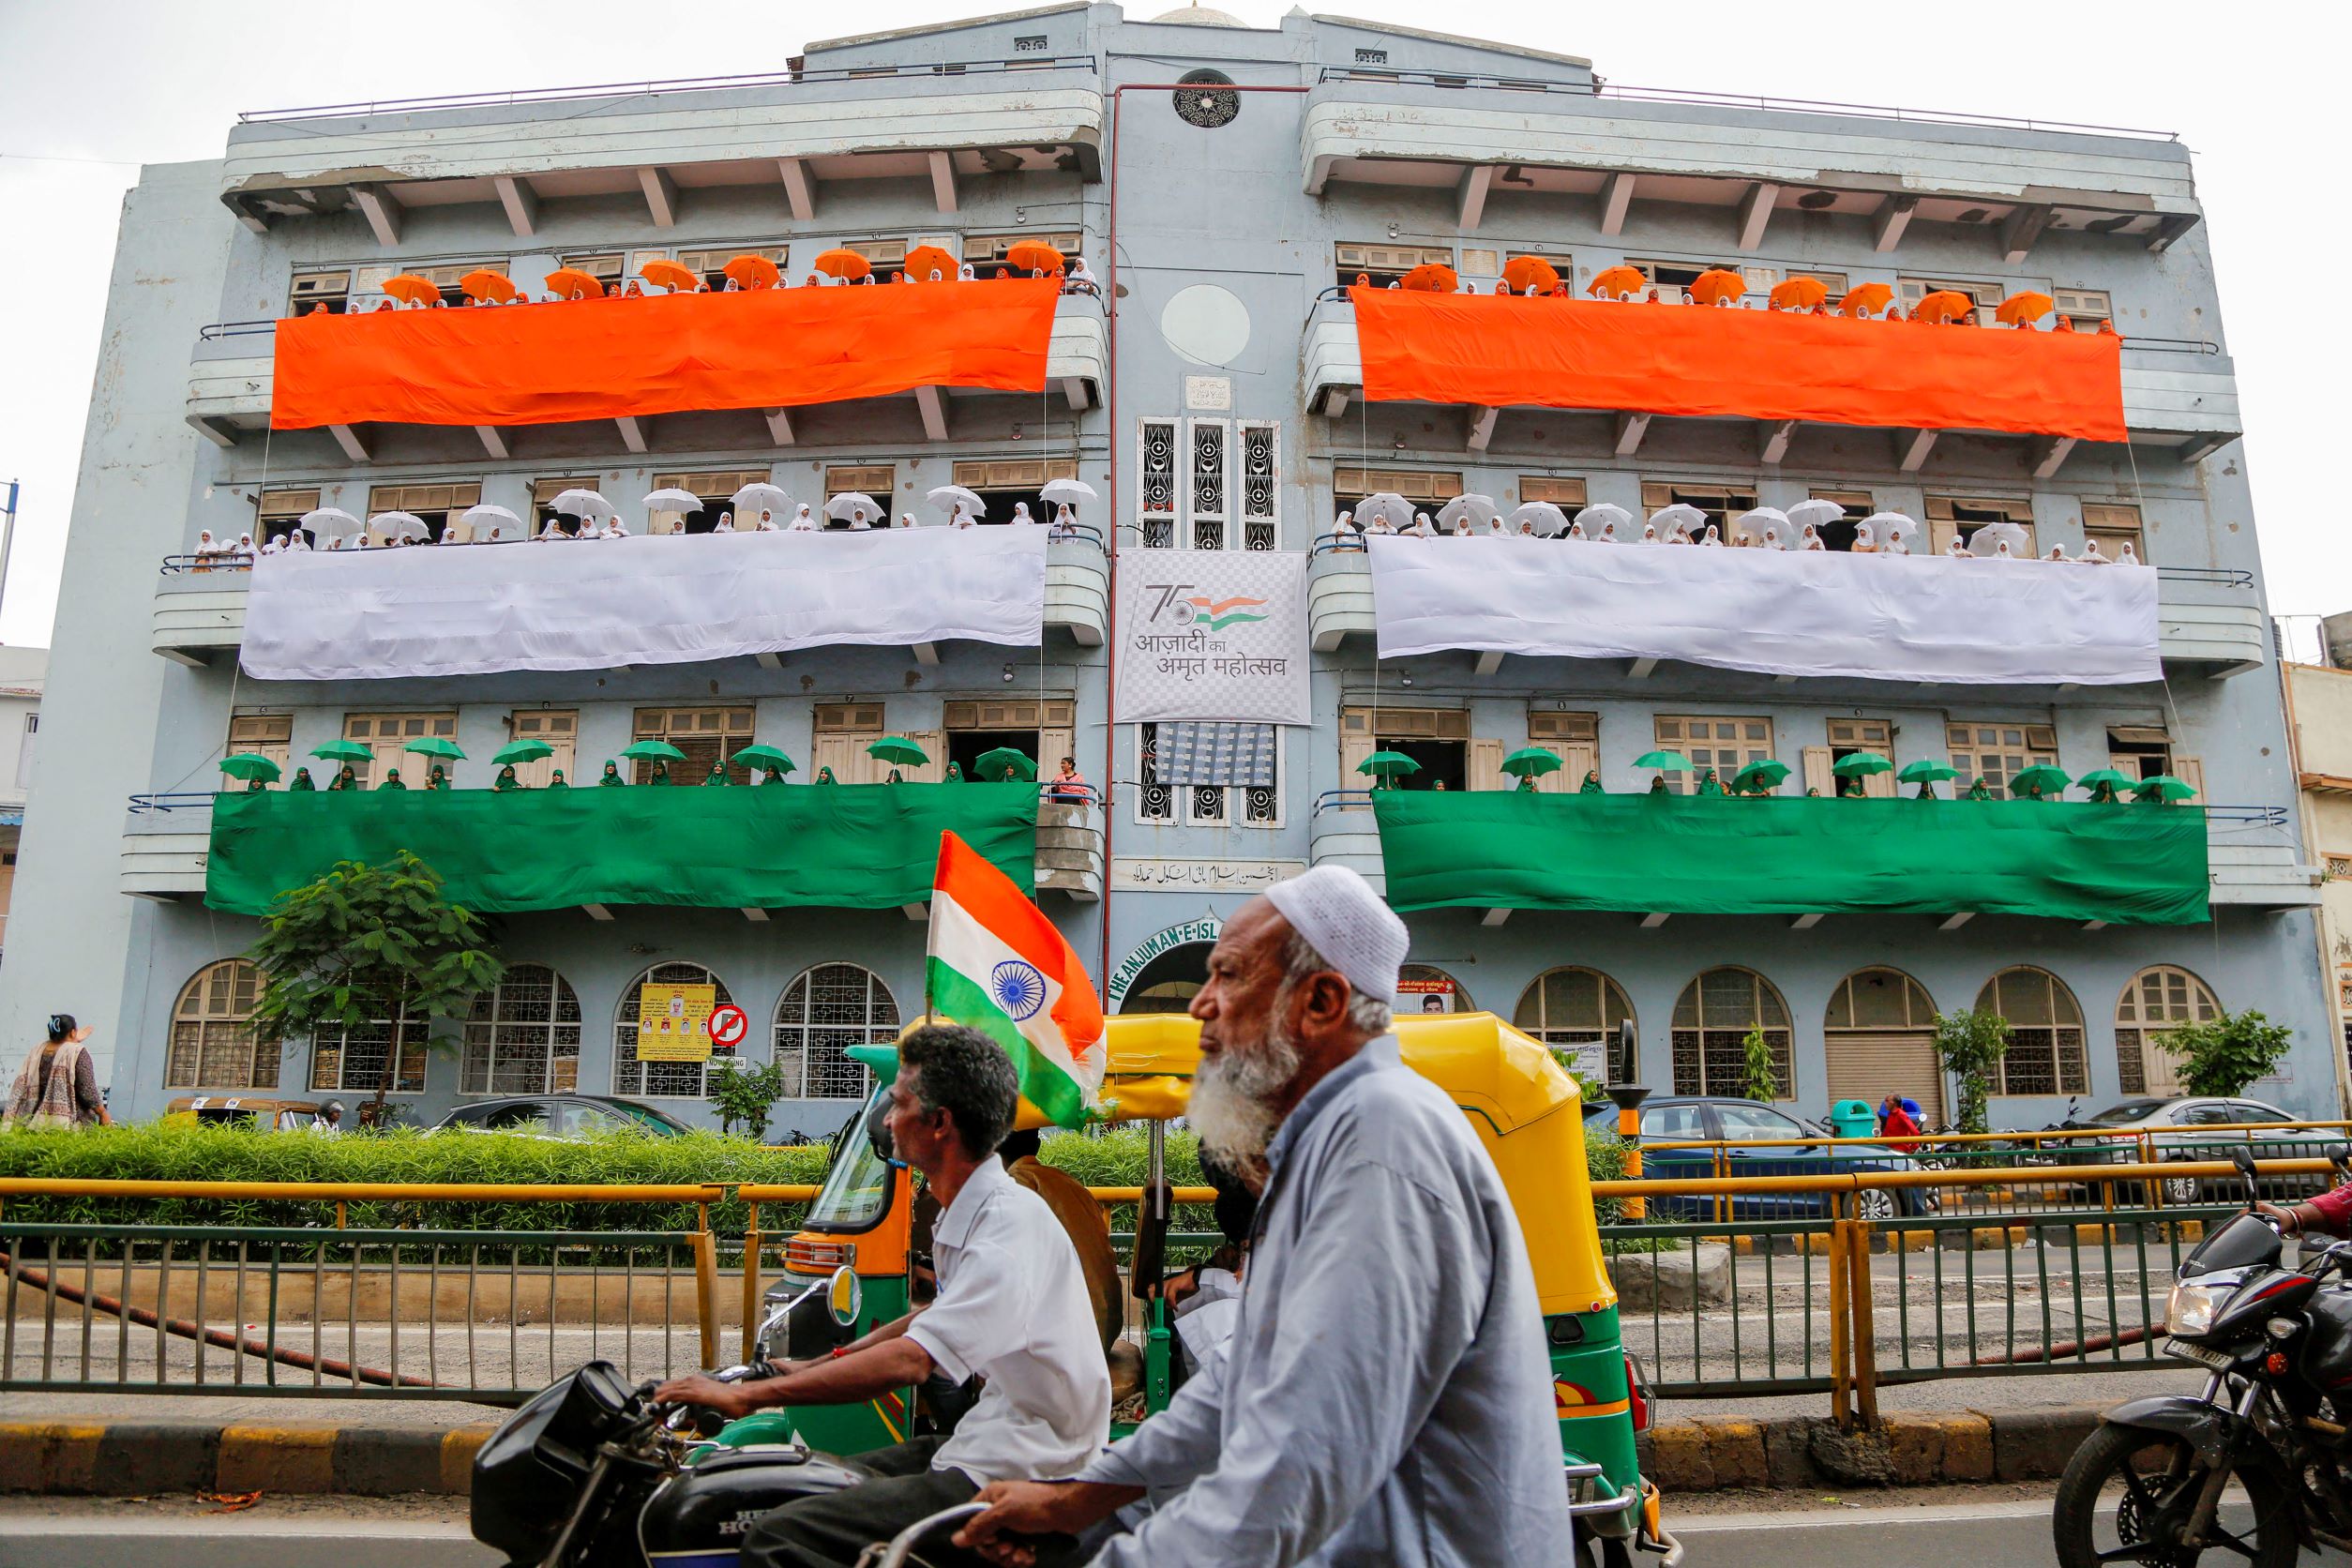 भारत में धार्मिक स्वतंत्रता संबंधी मानवाधिकार ख़तरे में हैं: अमेरिकी आयोग